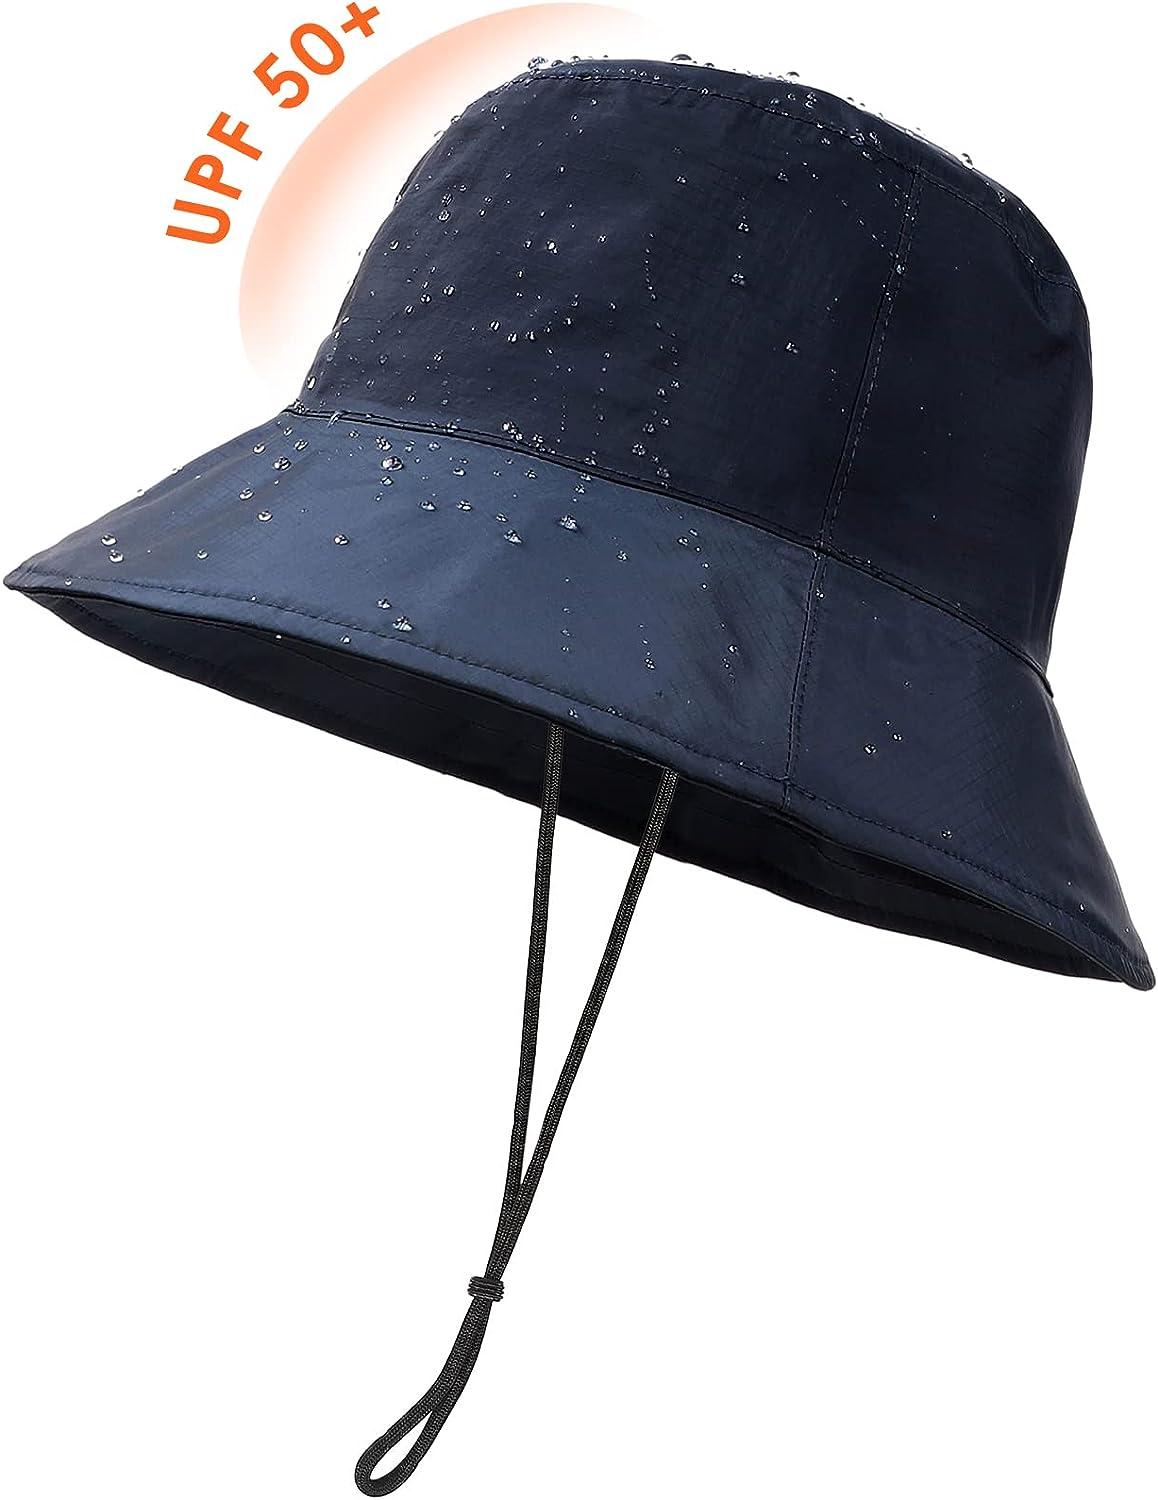  Bucket Hats For Men - Fishing Hat - Mens Beach Hat - Bucket  Hat For Women - Beach Hats For Women - Sun Hats Navy